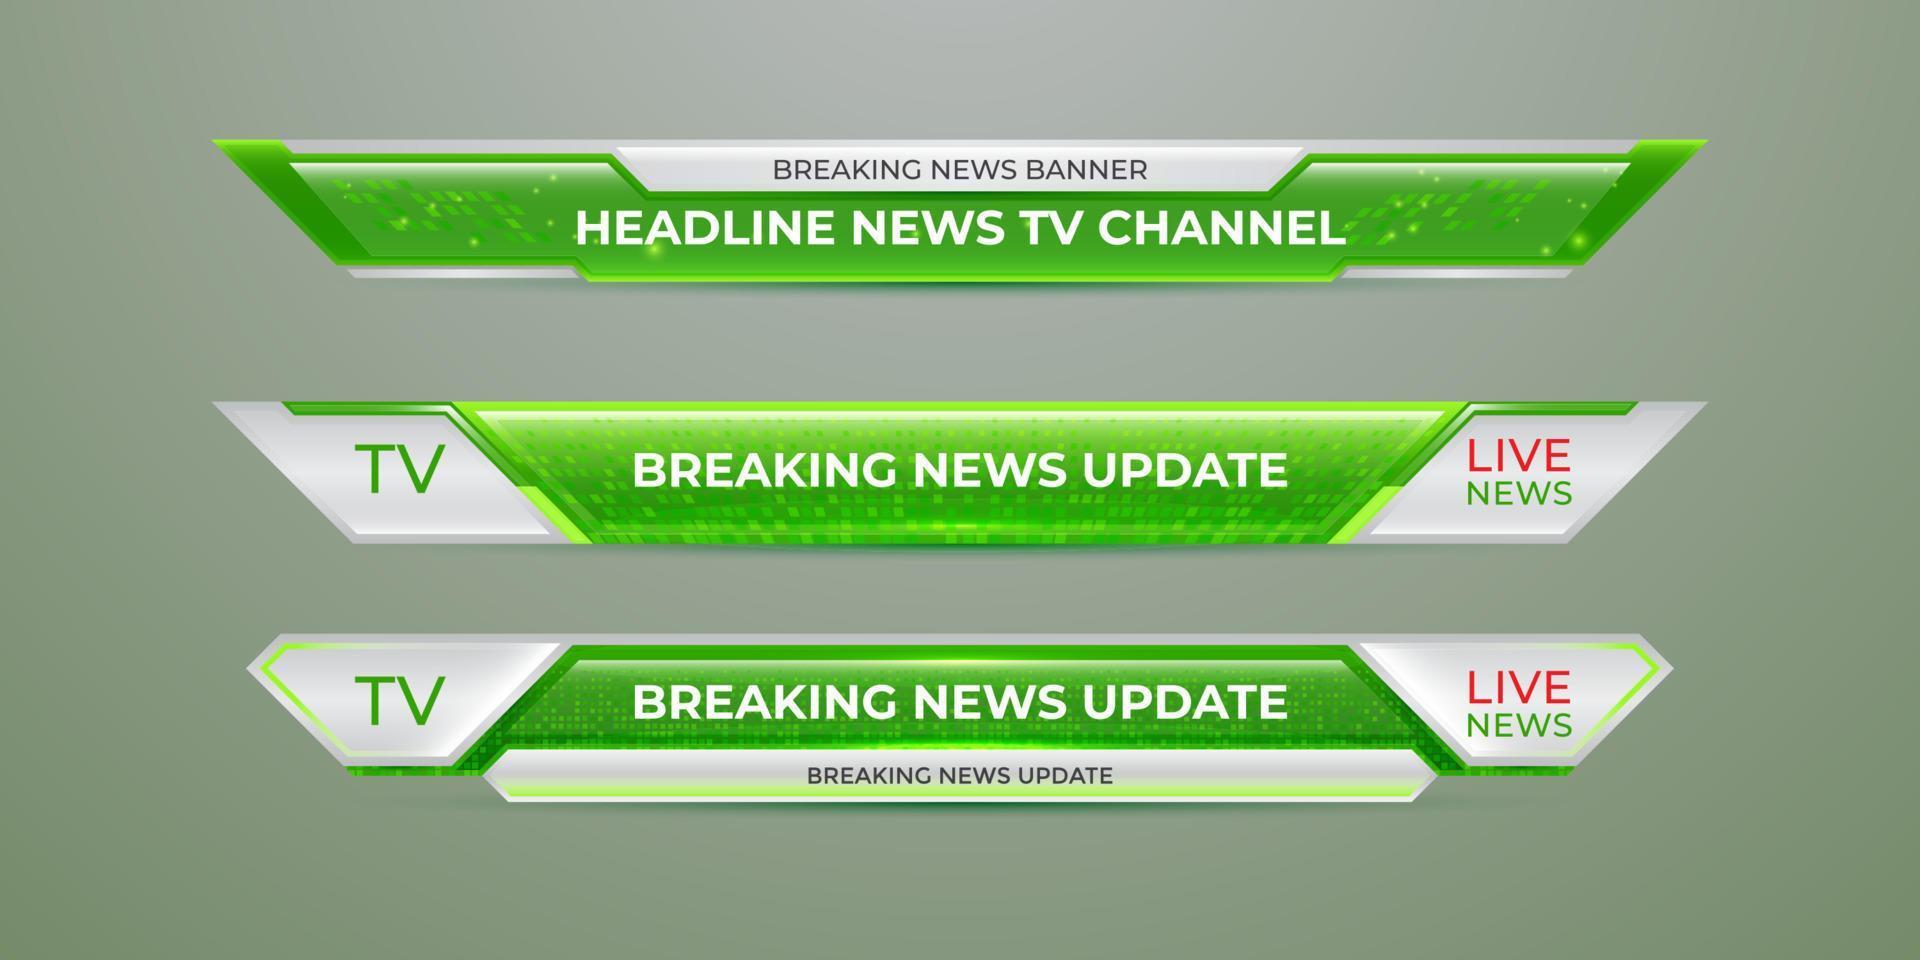 Broadcast-Nachrichten im unteren Drittel moderne Banner-Vorlage für Fernseh-, Video- und Medienkanal vektor